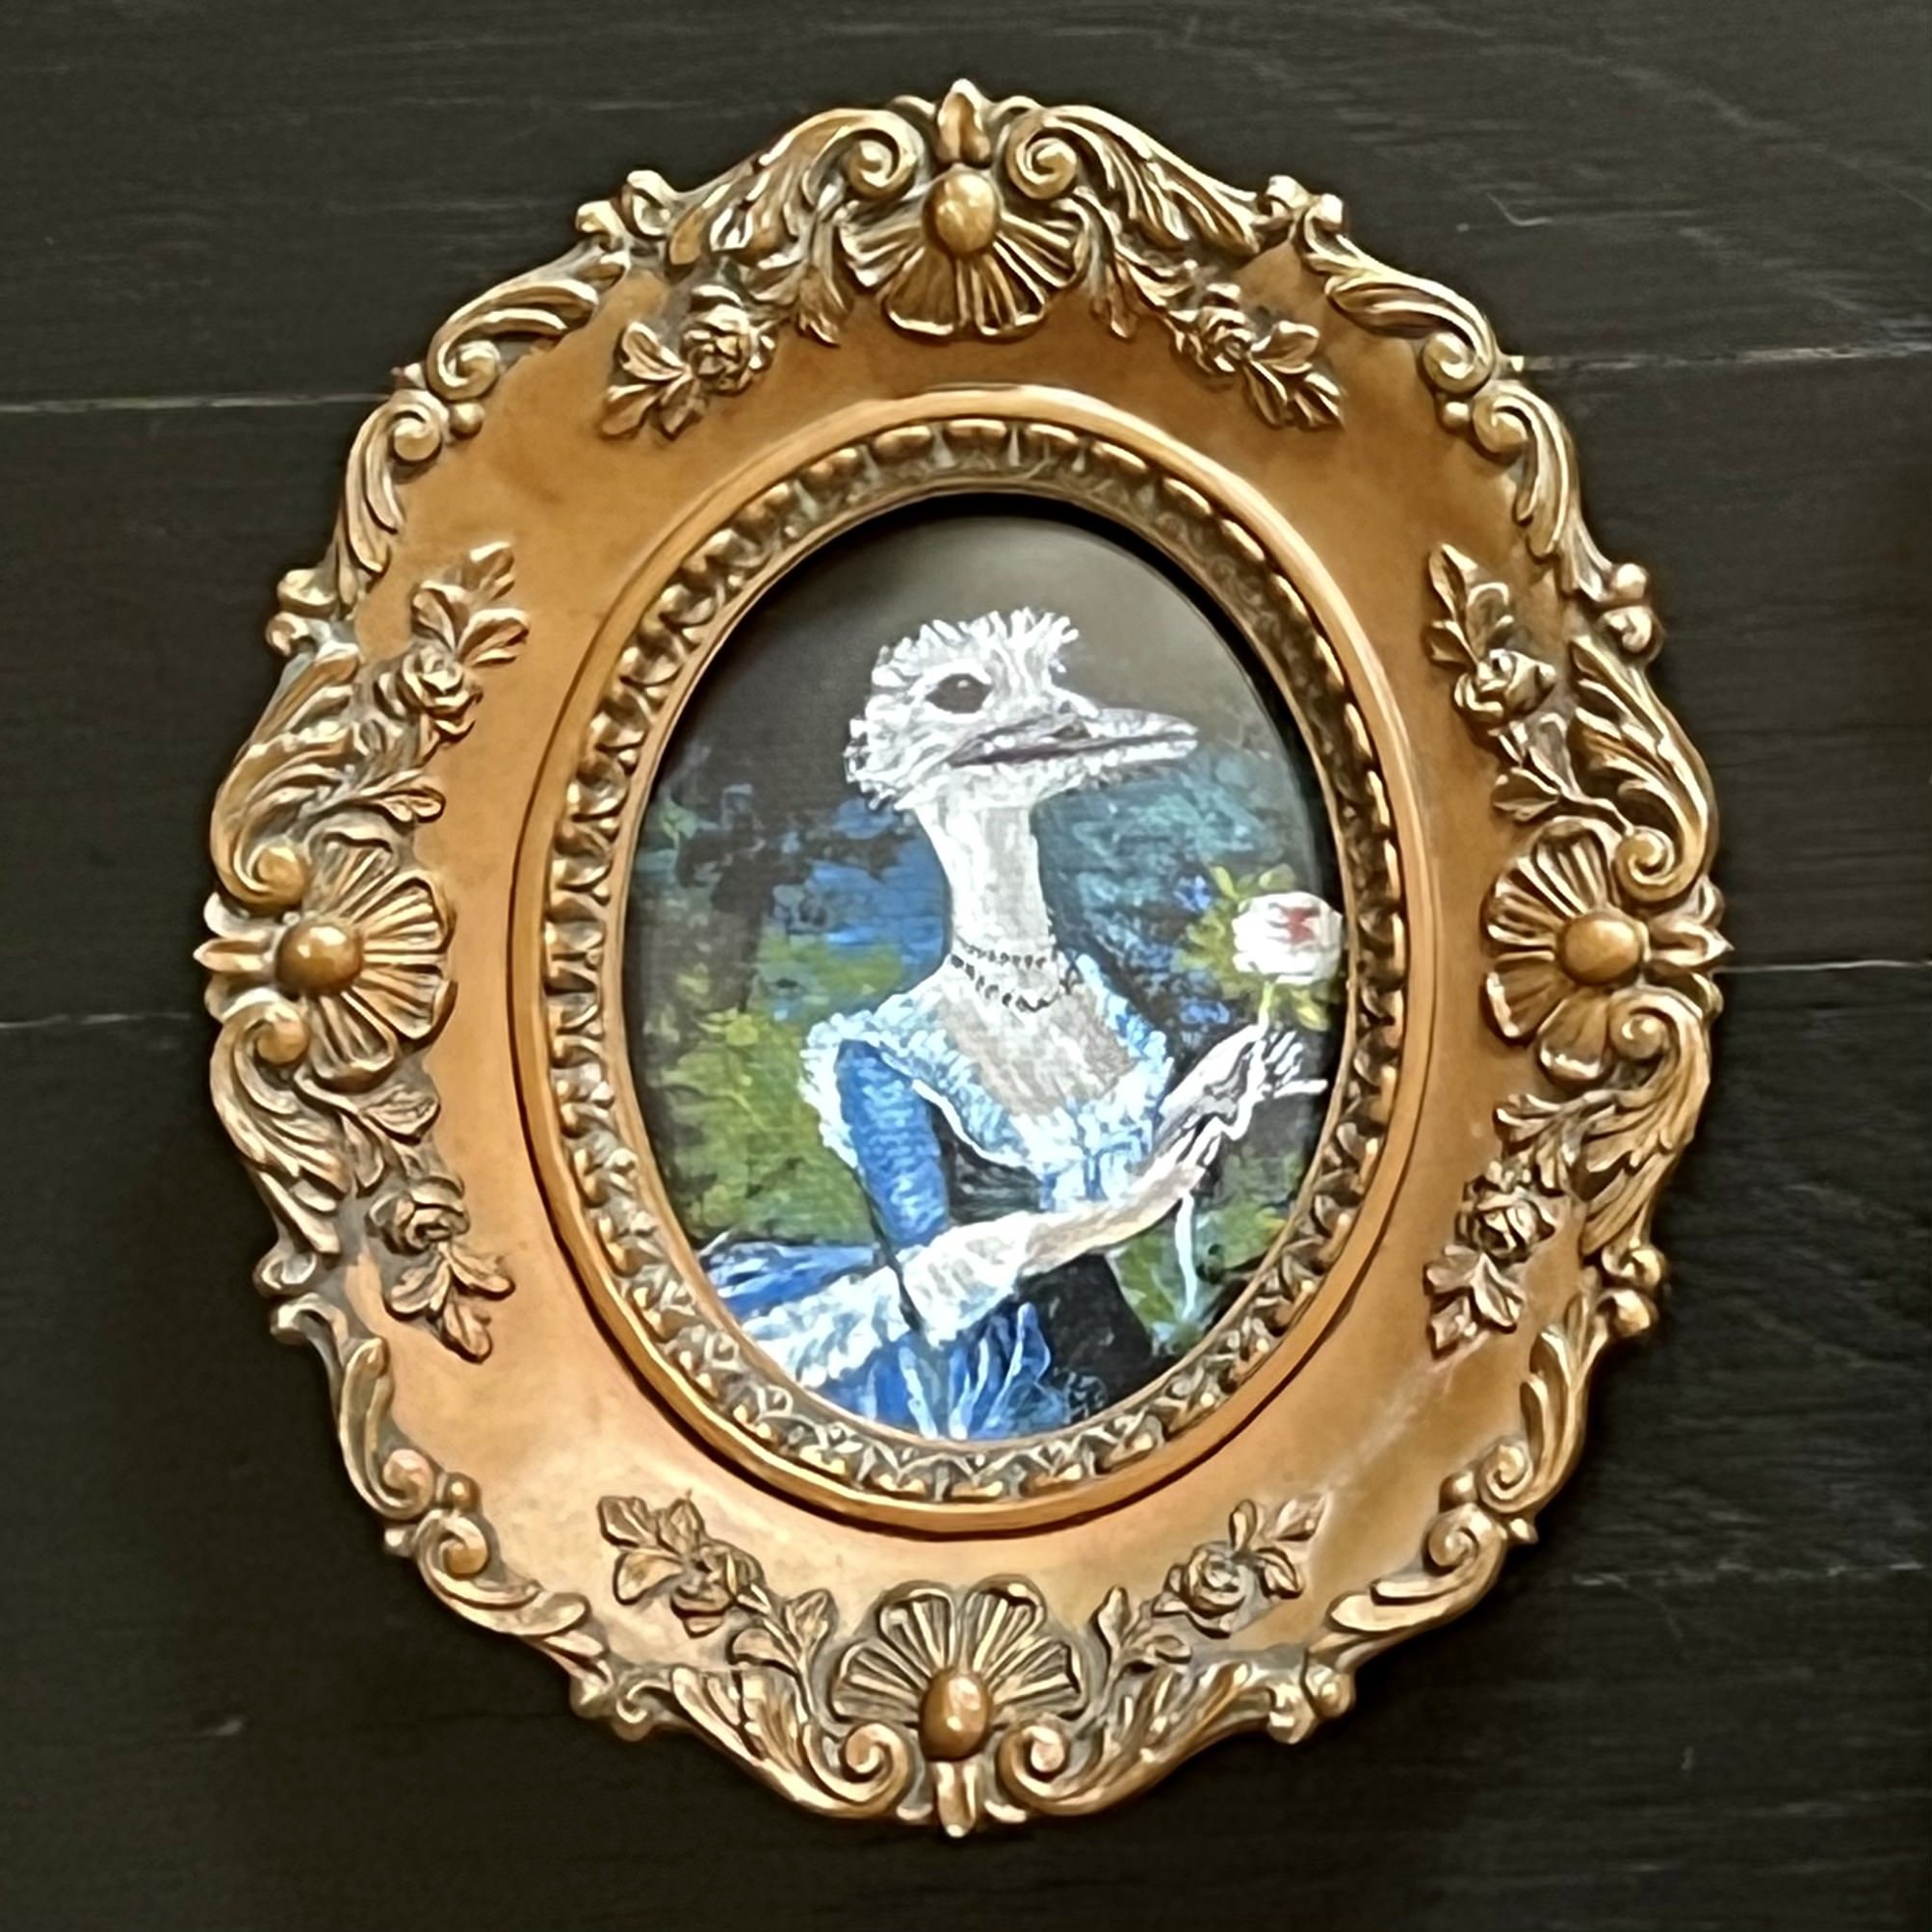 Marie-Emu Antoinette.jpg